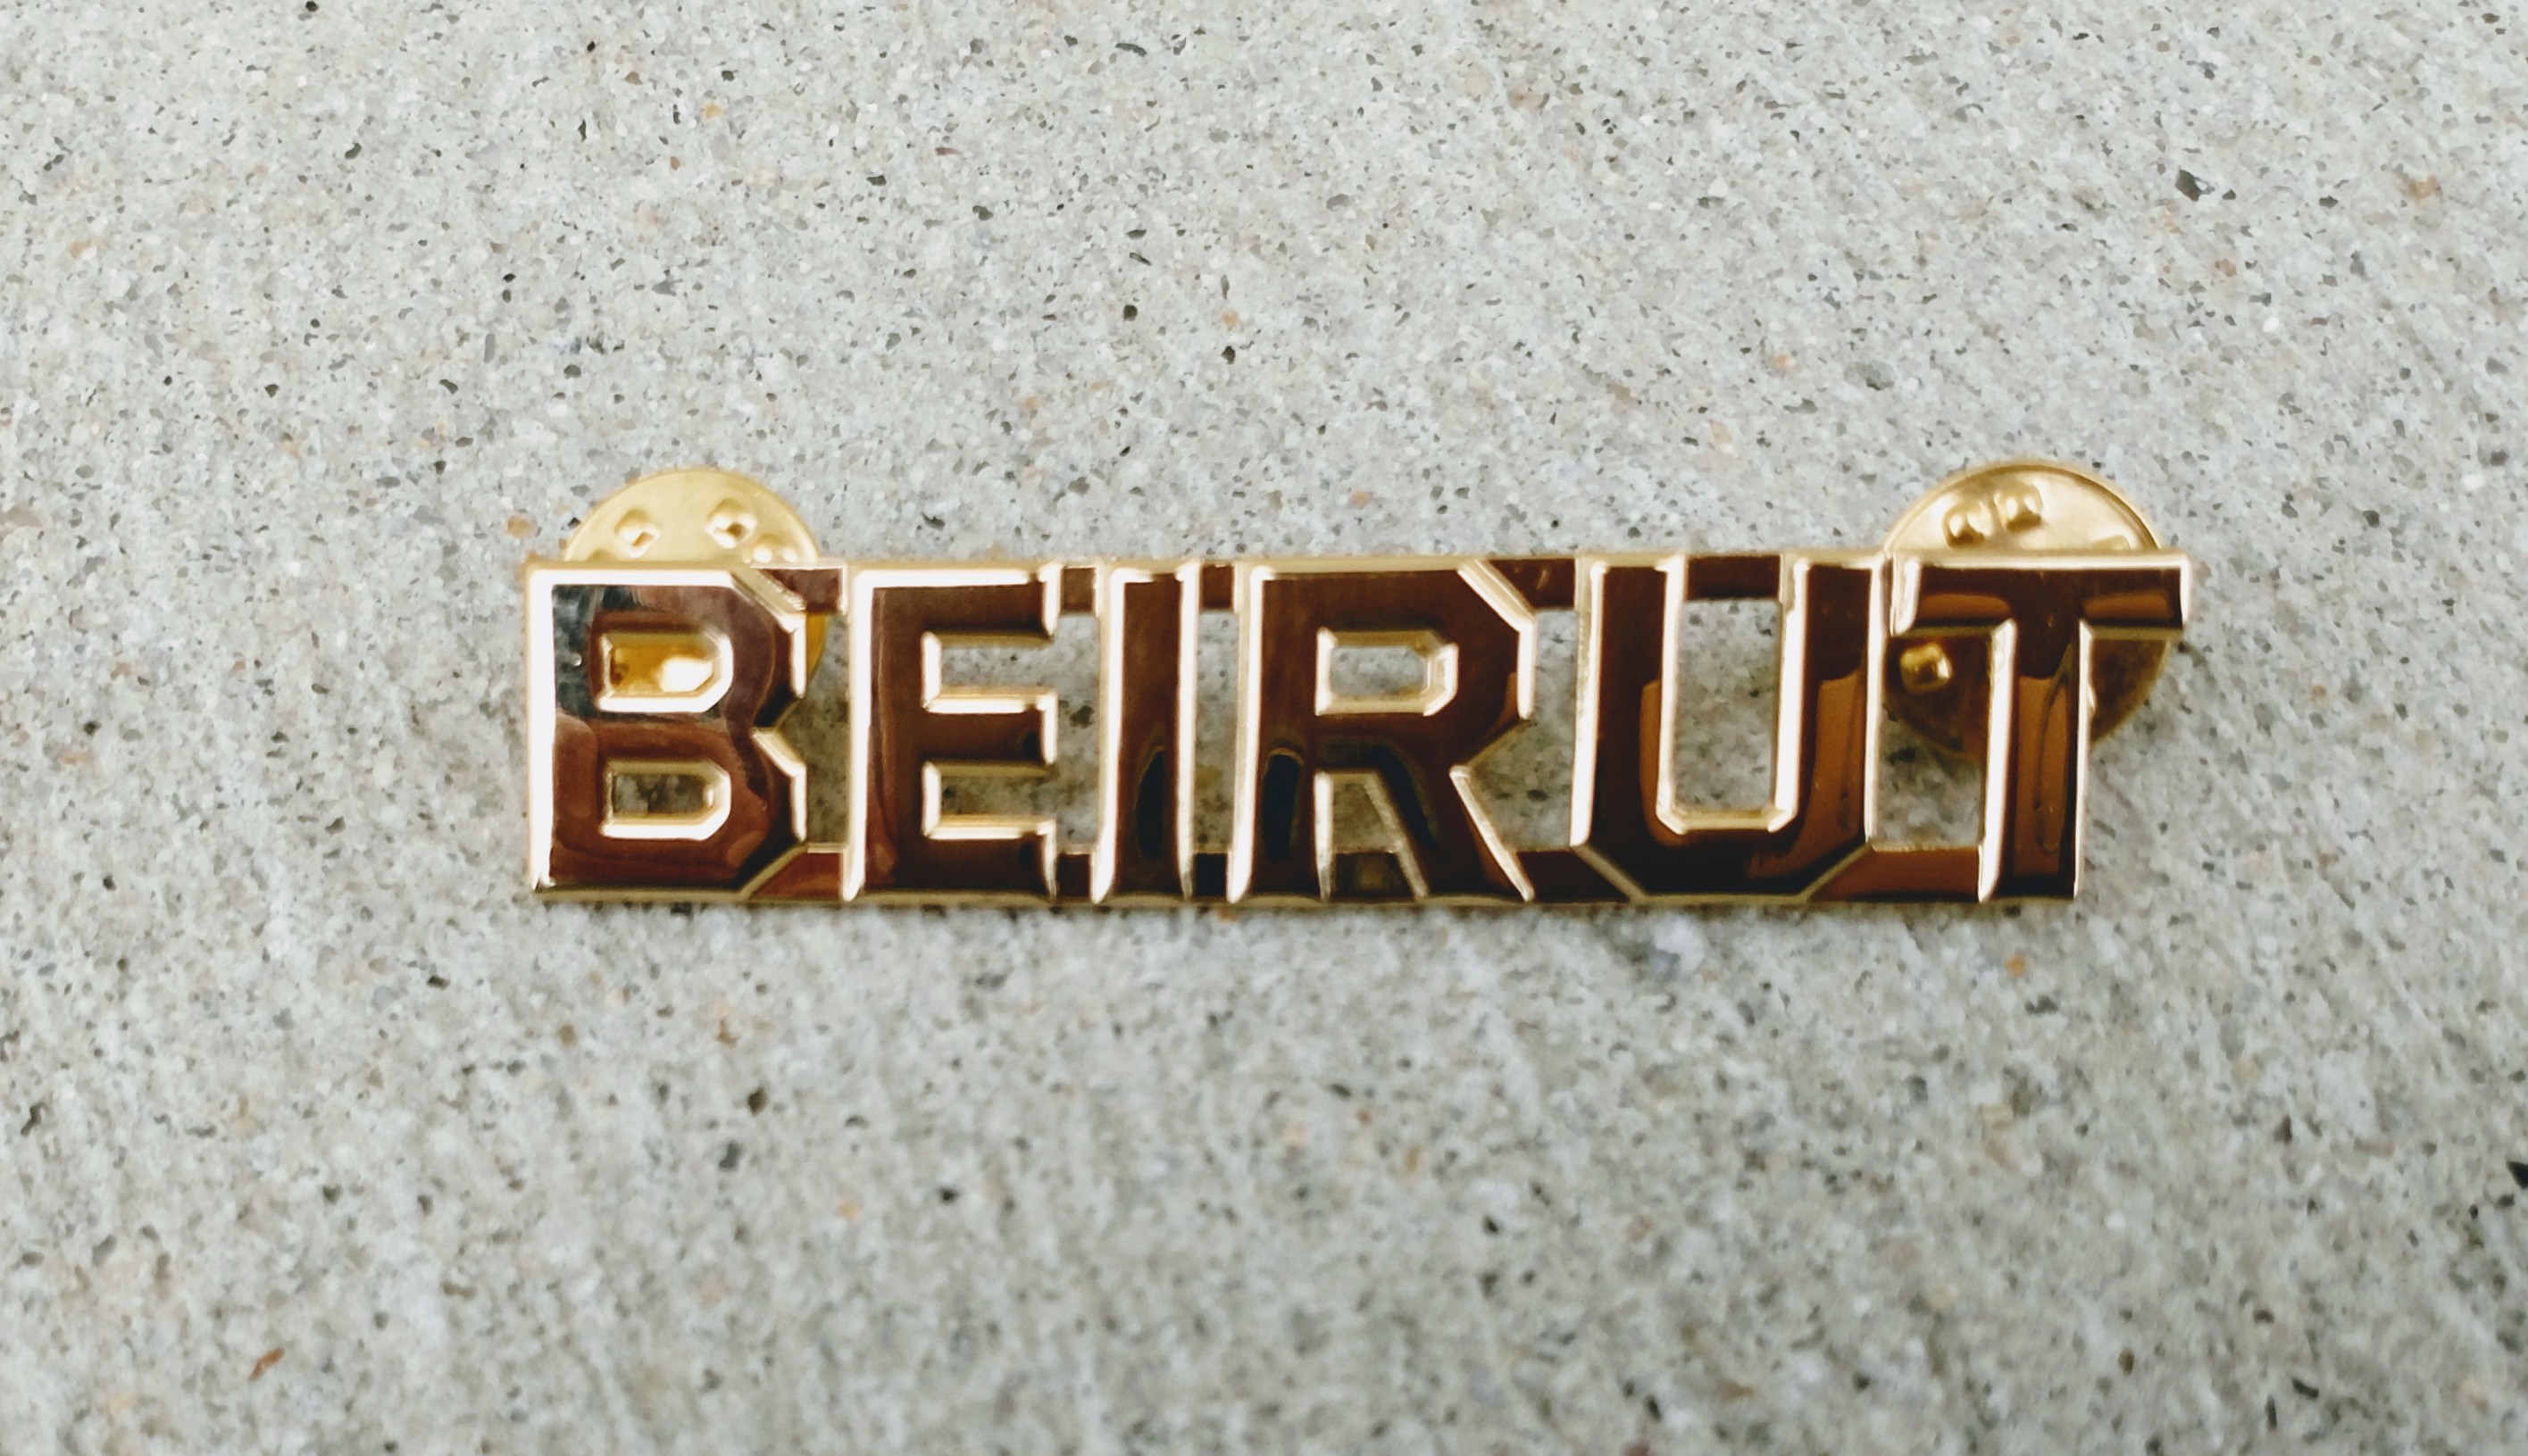 Beirut hat pin